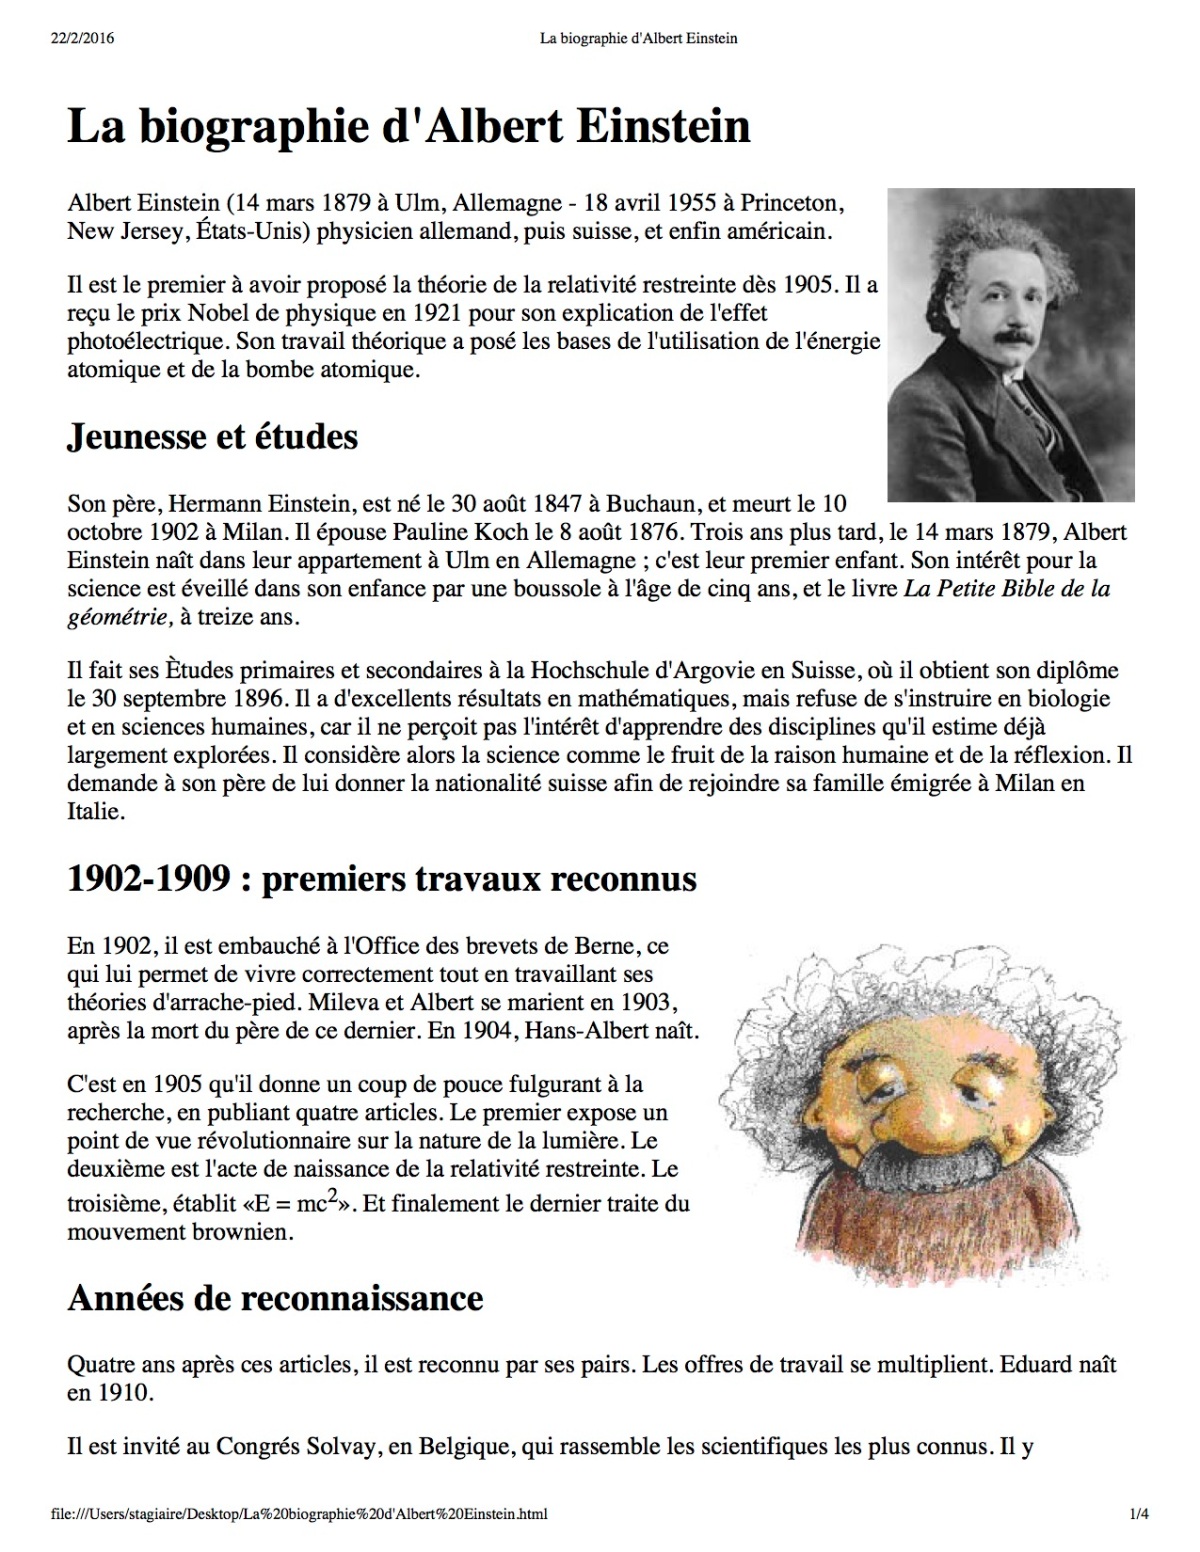 La biographie d'Albert Einstein